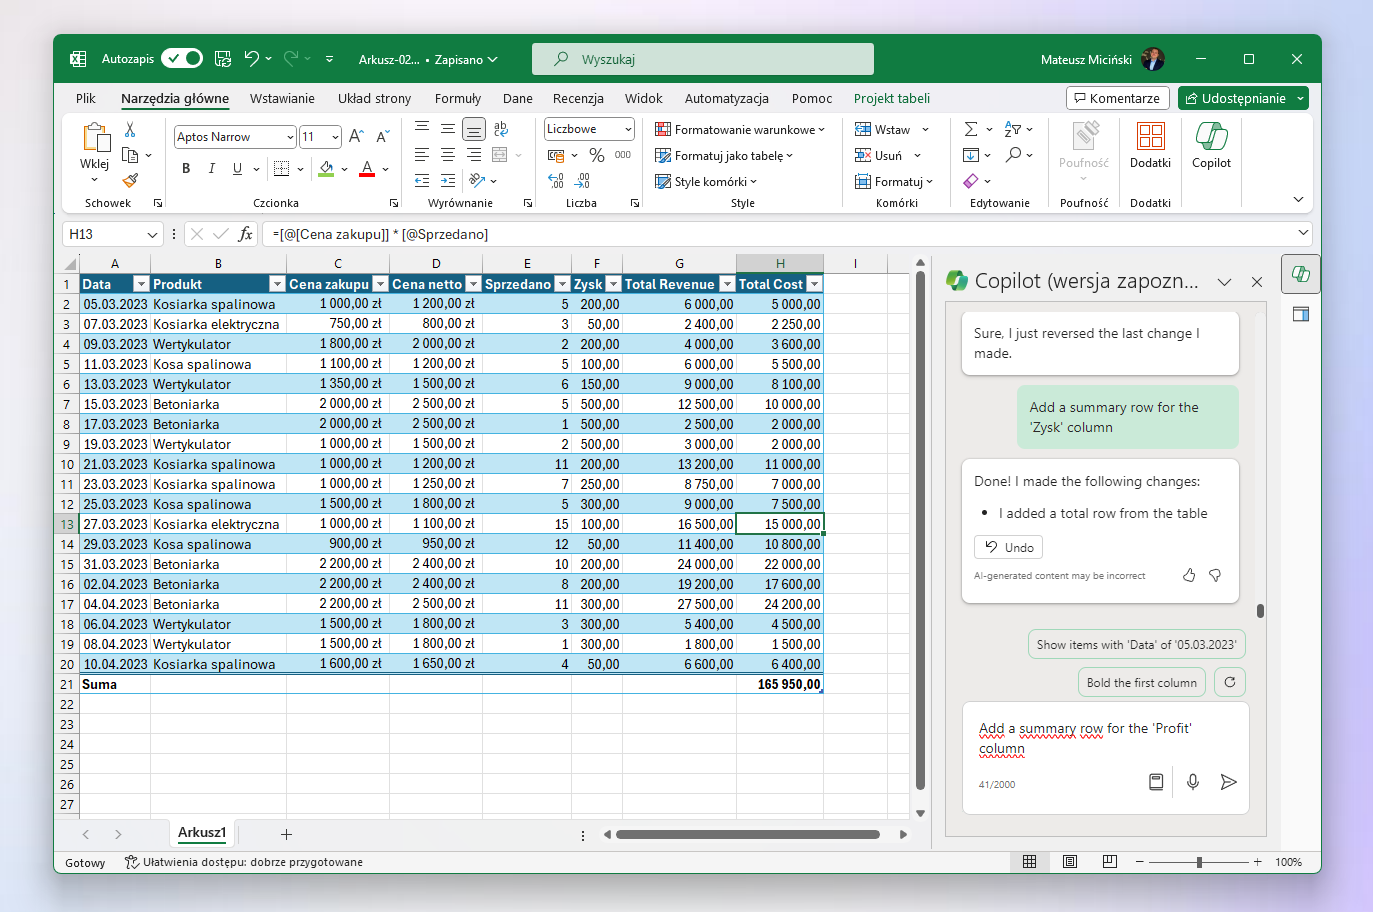 Jak działa Copilot w Excel?